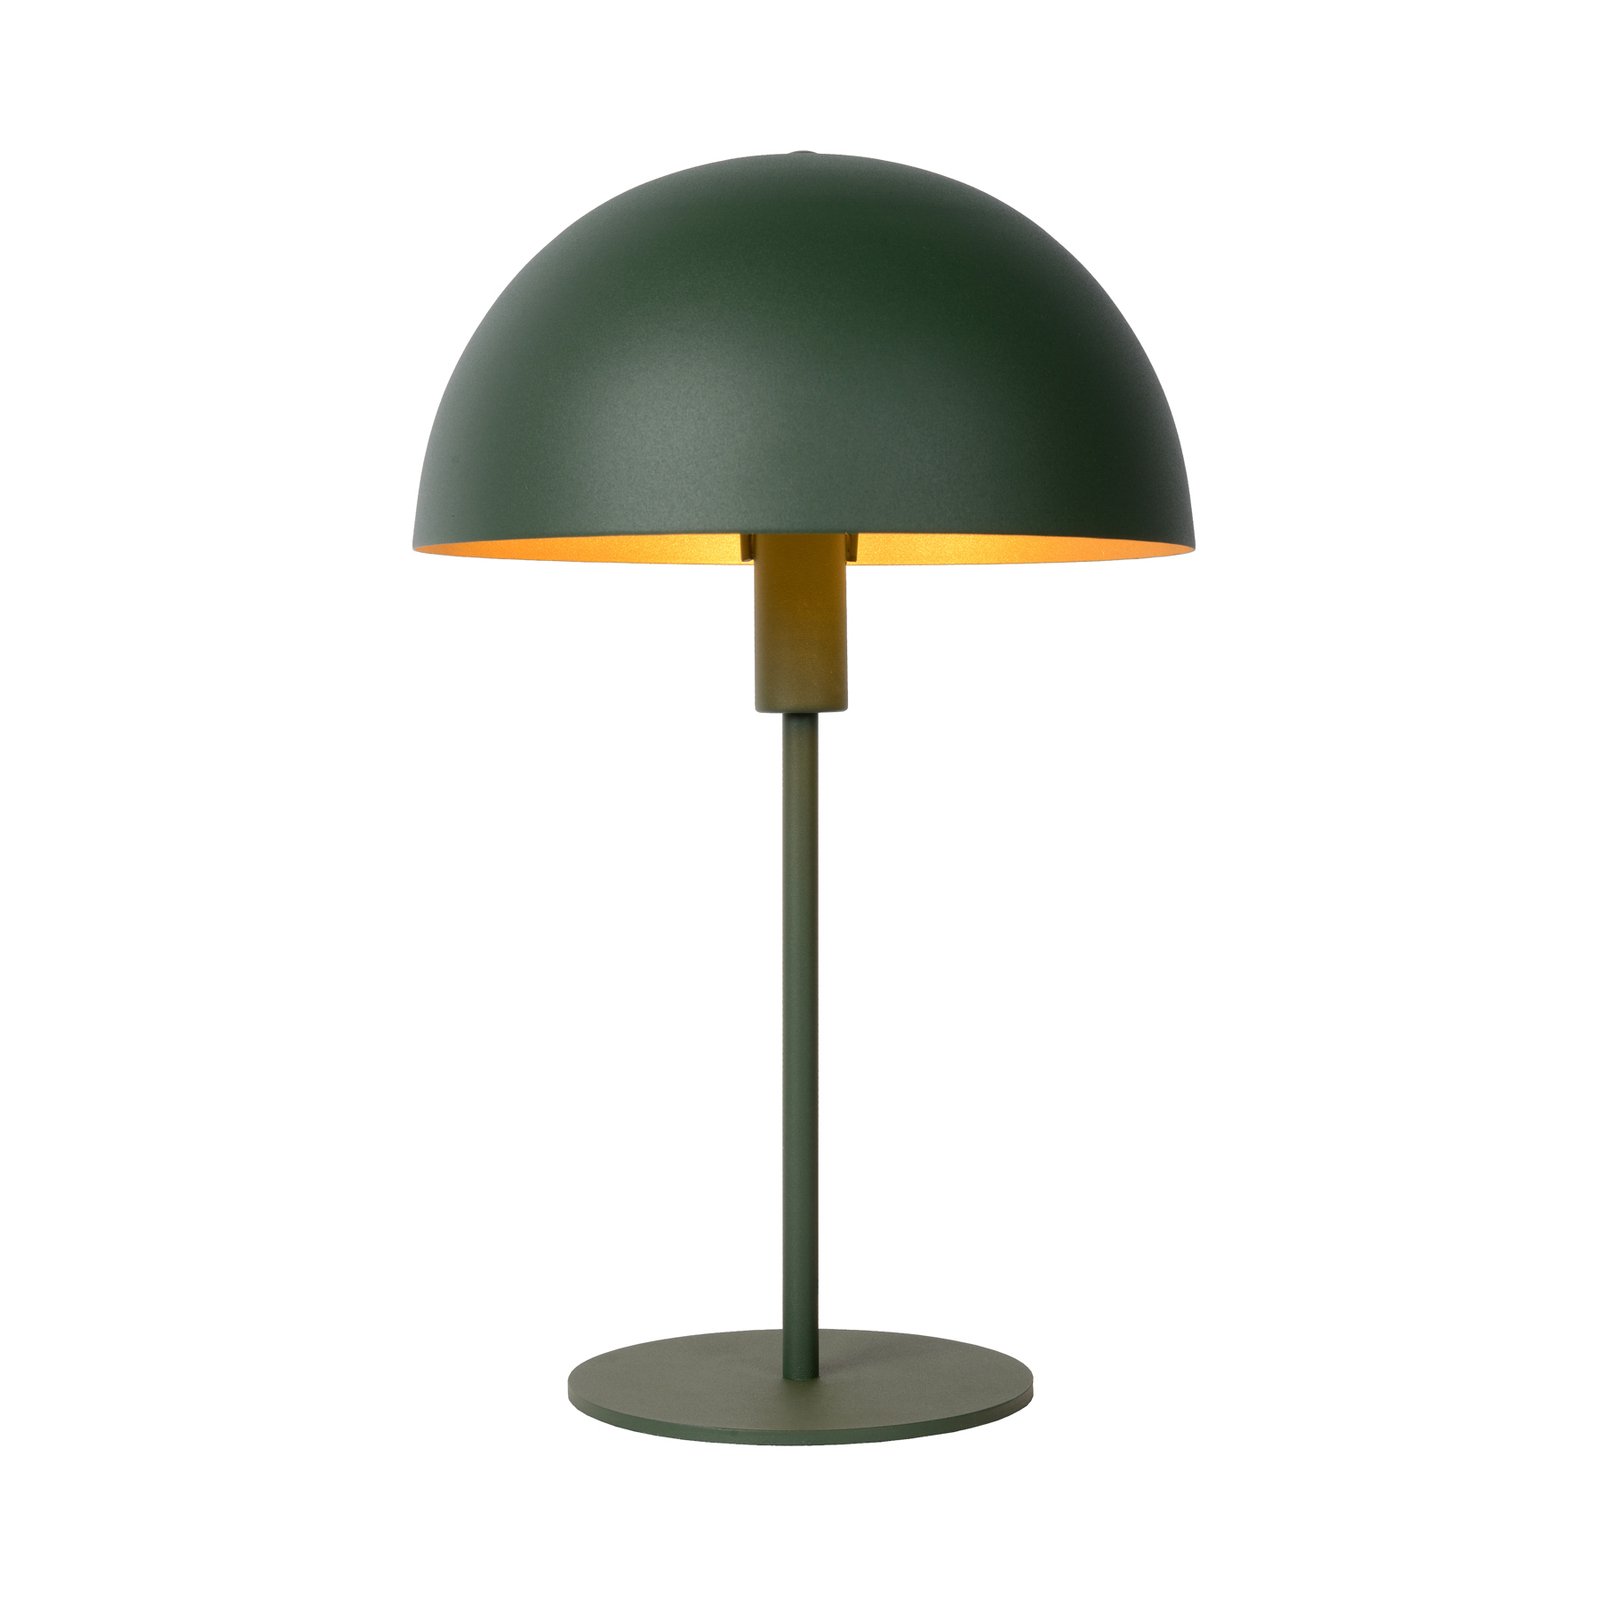 Siemon bordlampe i stål, Ø 25 cm, grøn